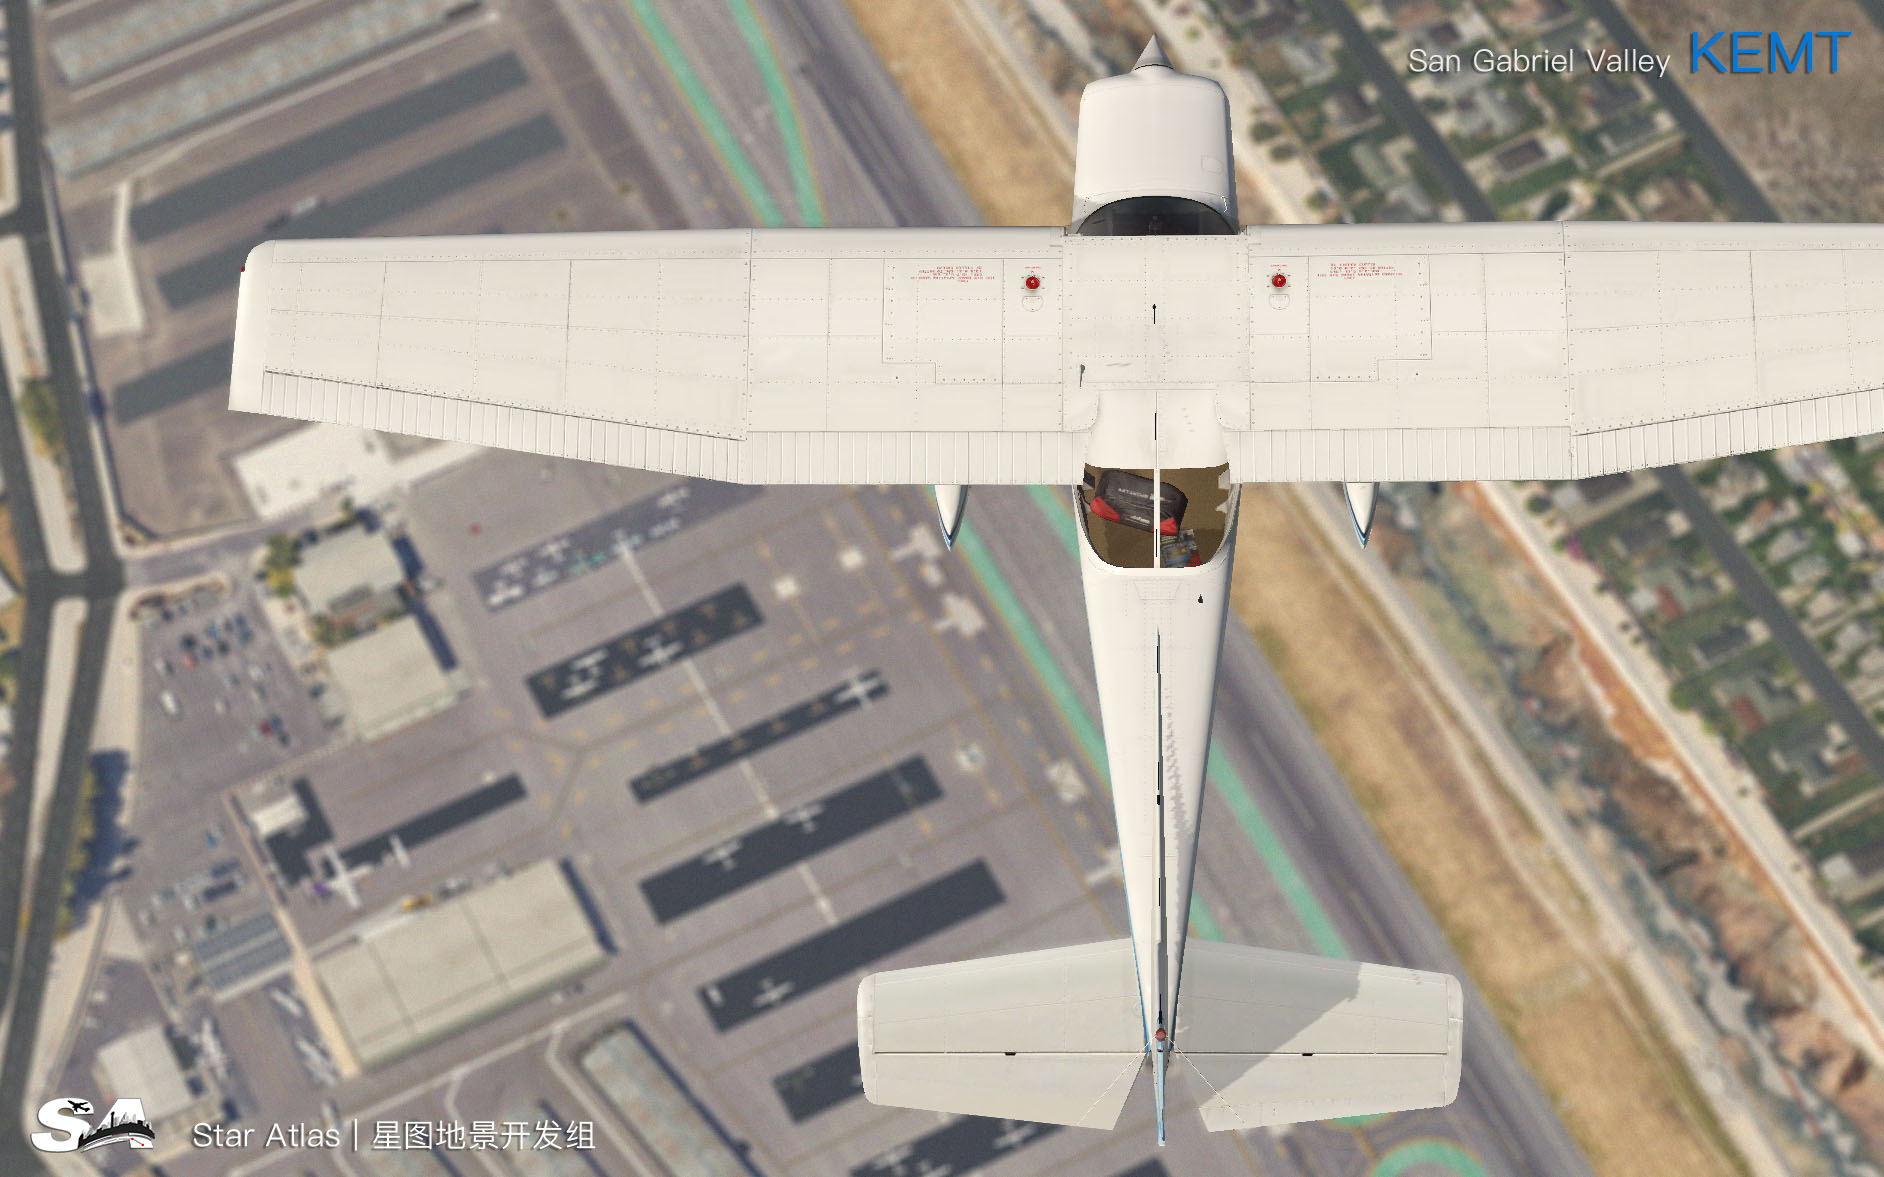 【X-Plane】KEMT-圣盖博谷机场 HD 1.0-3074 